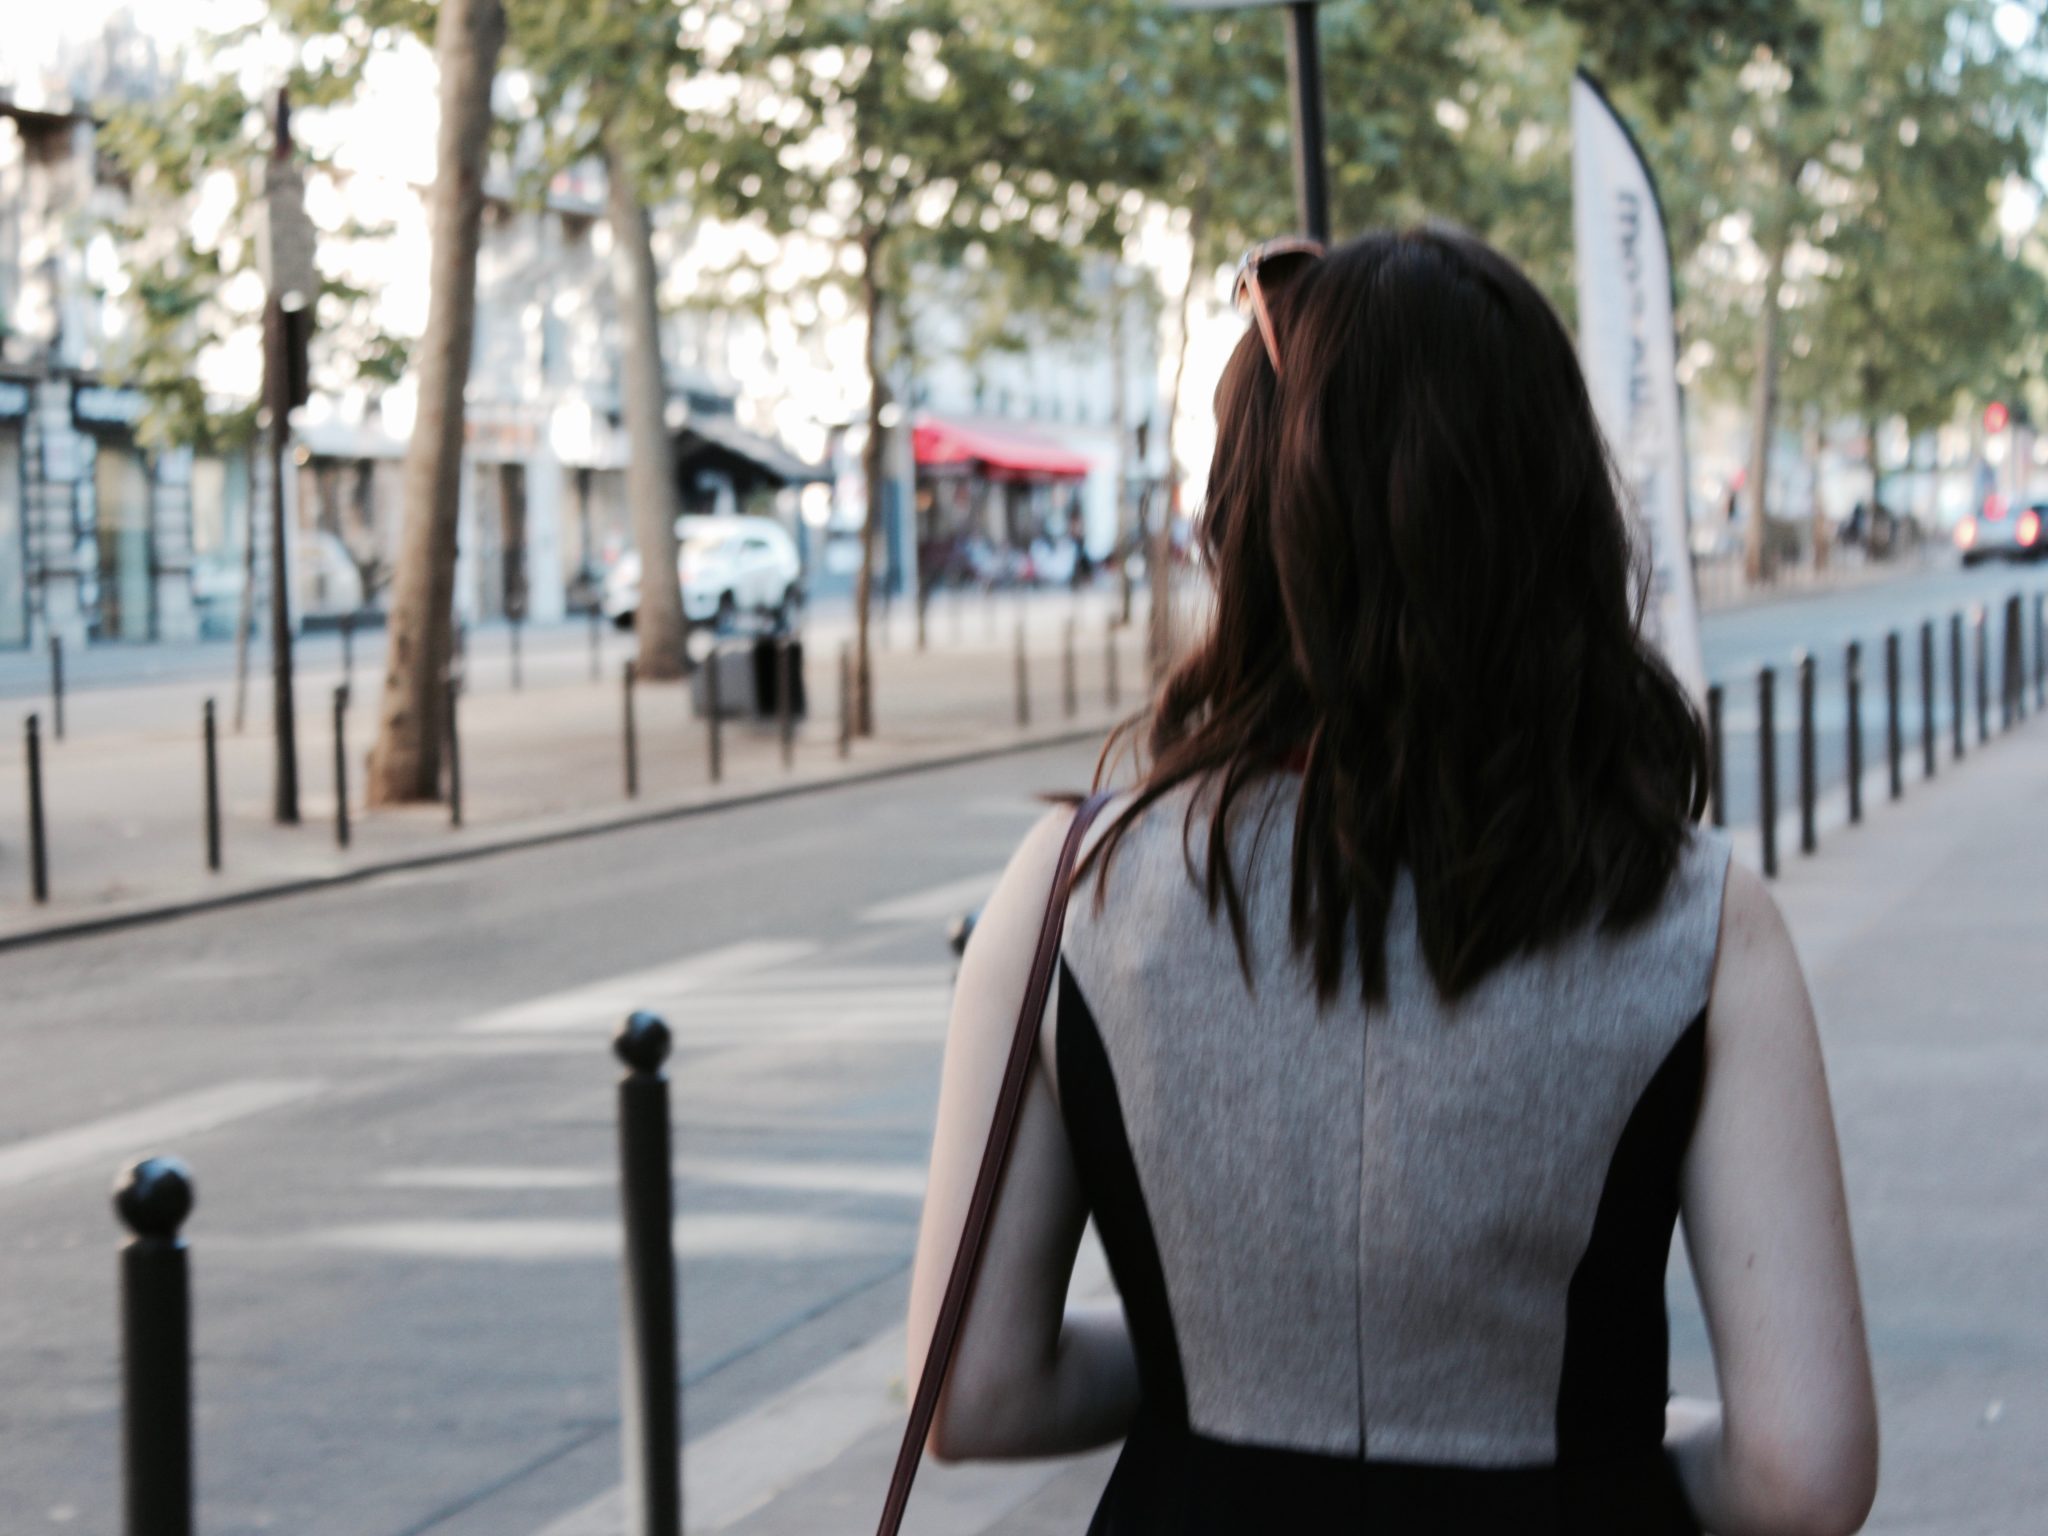 Walking through Paris